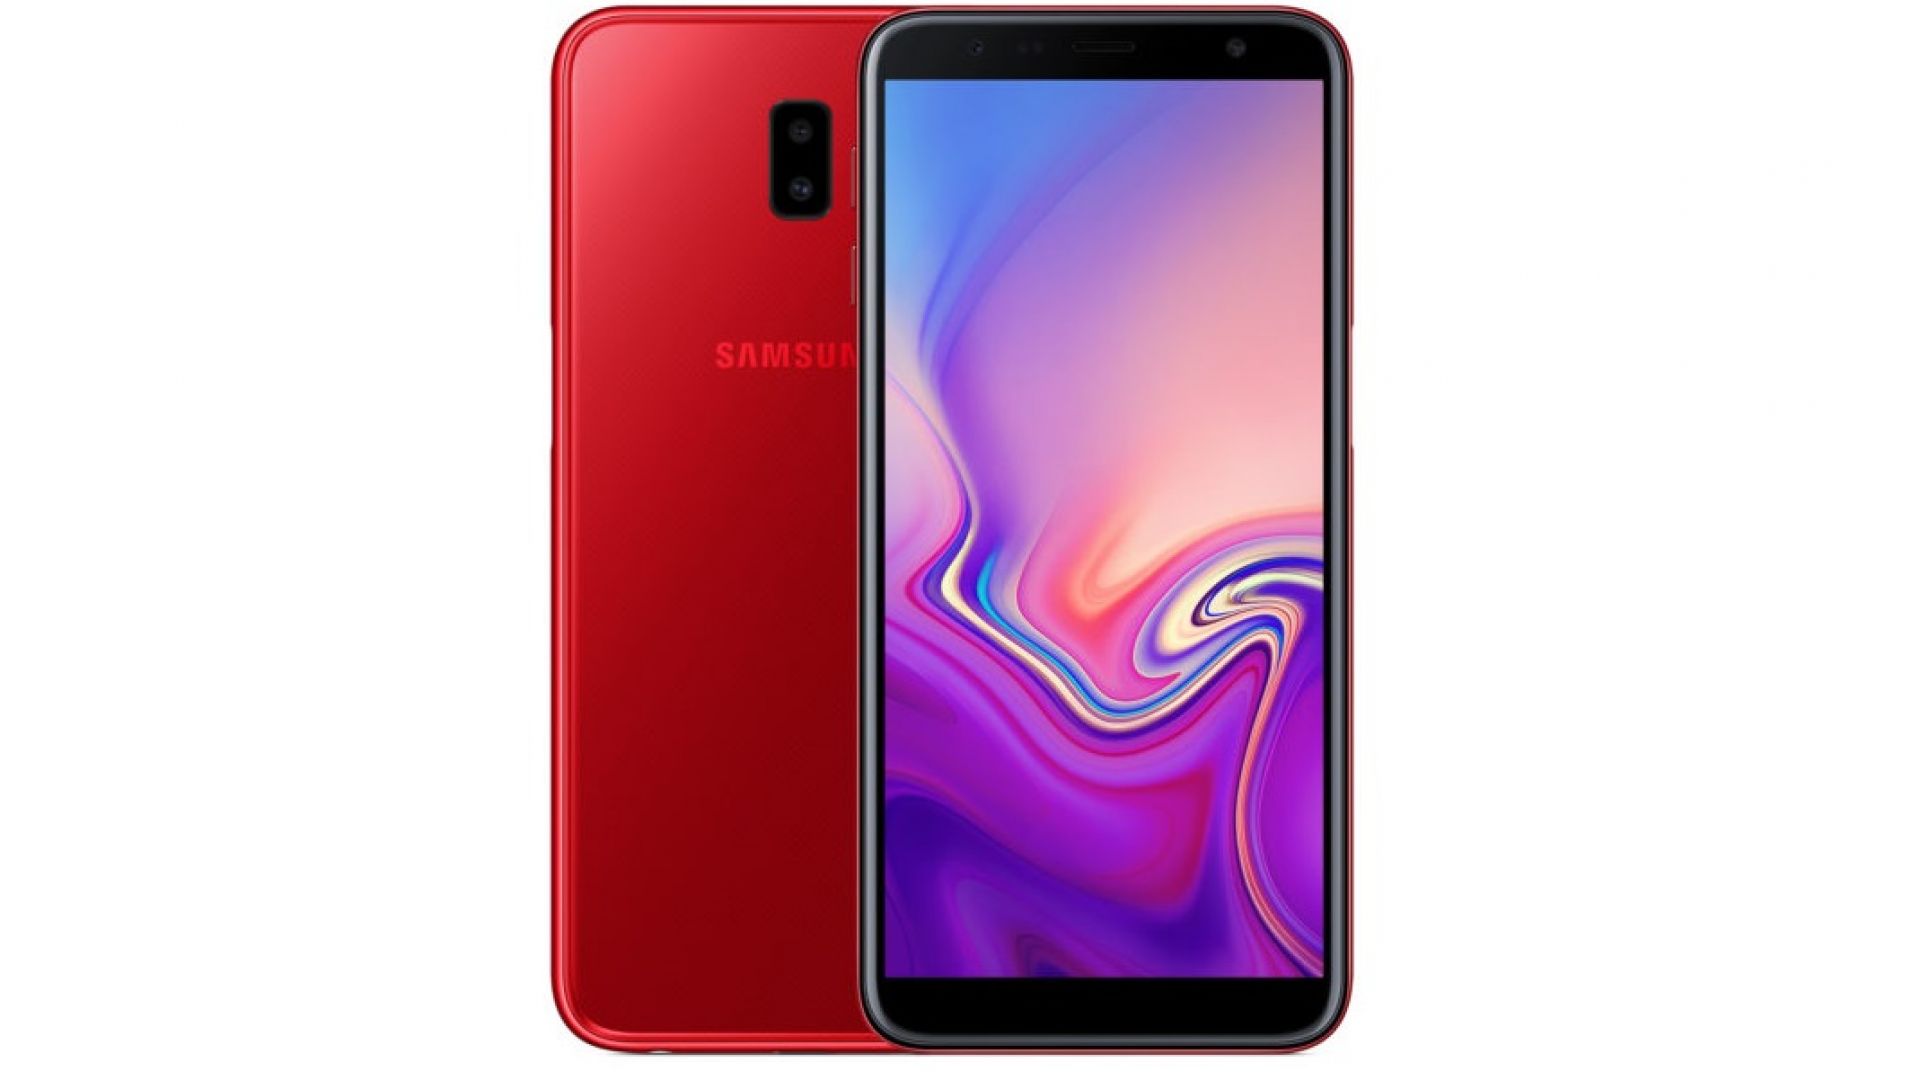 Samsung Galaxy J6+ (2018)